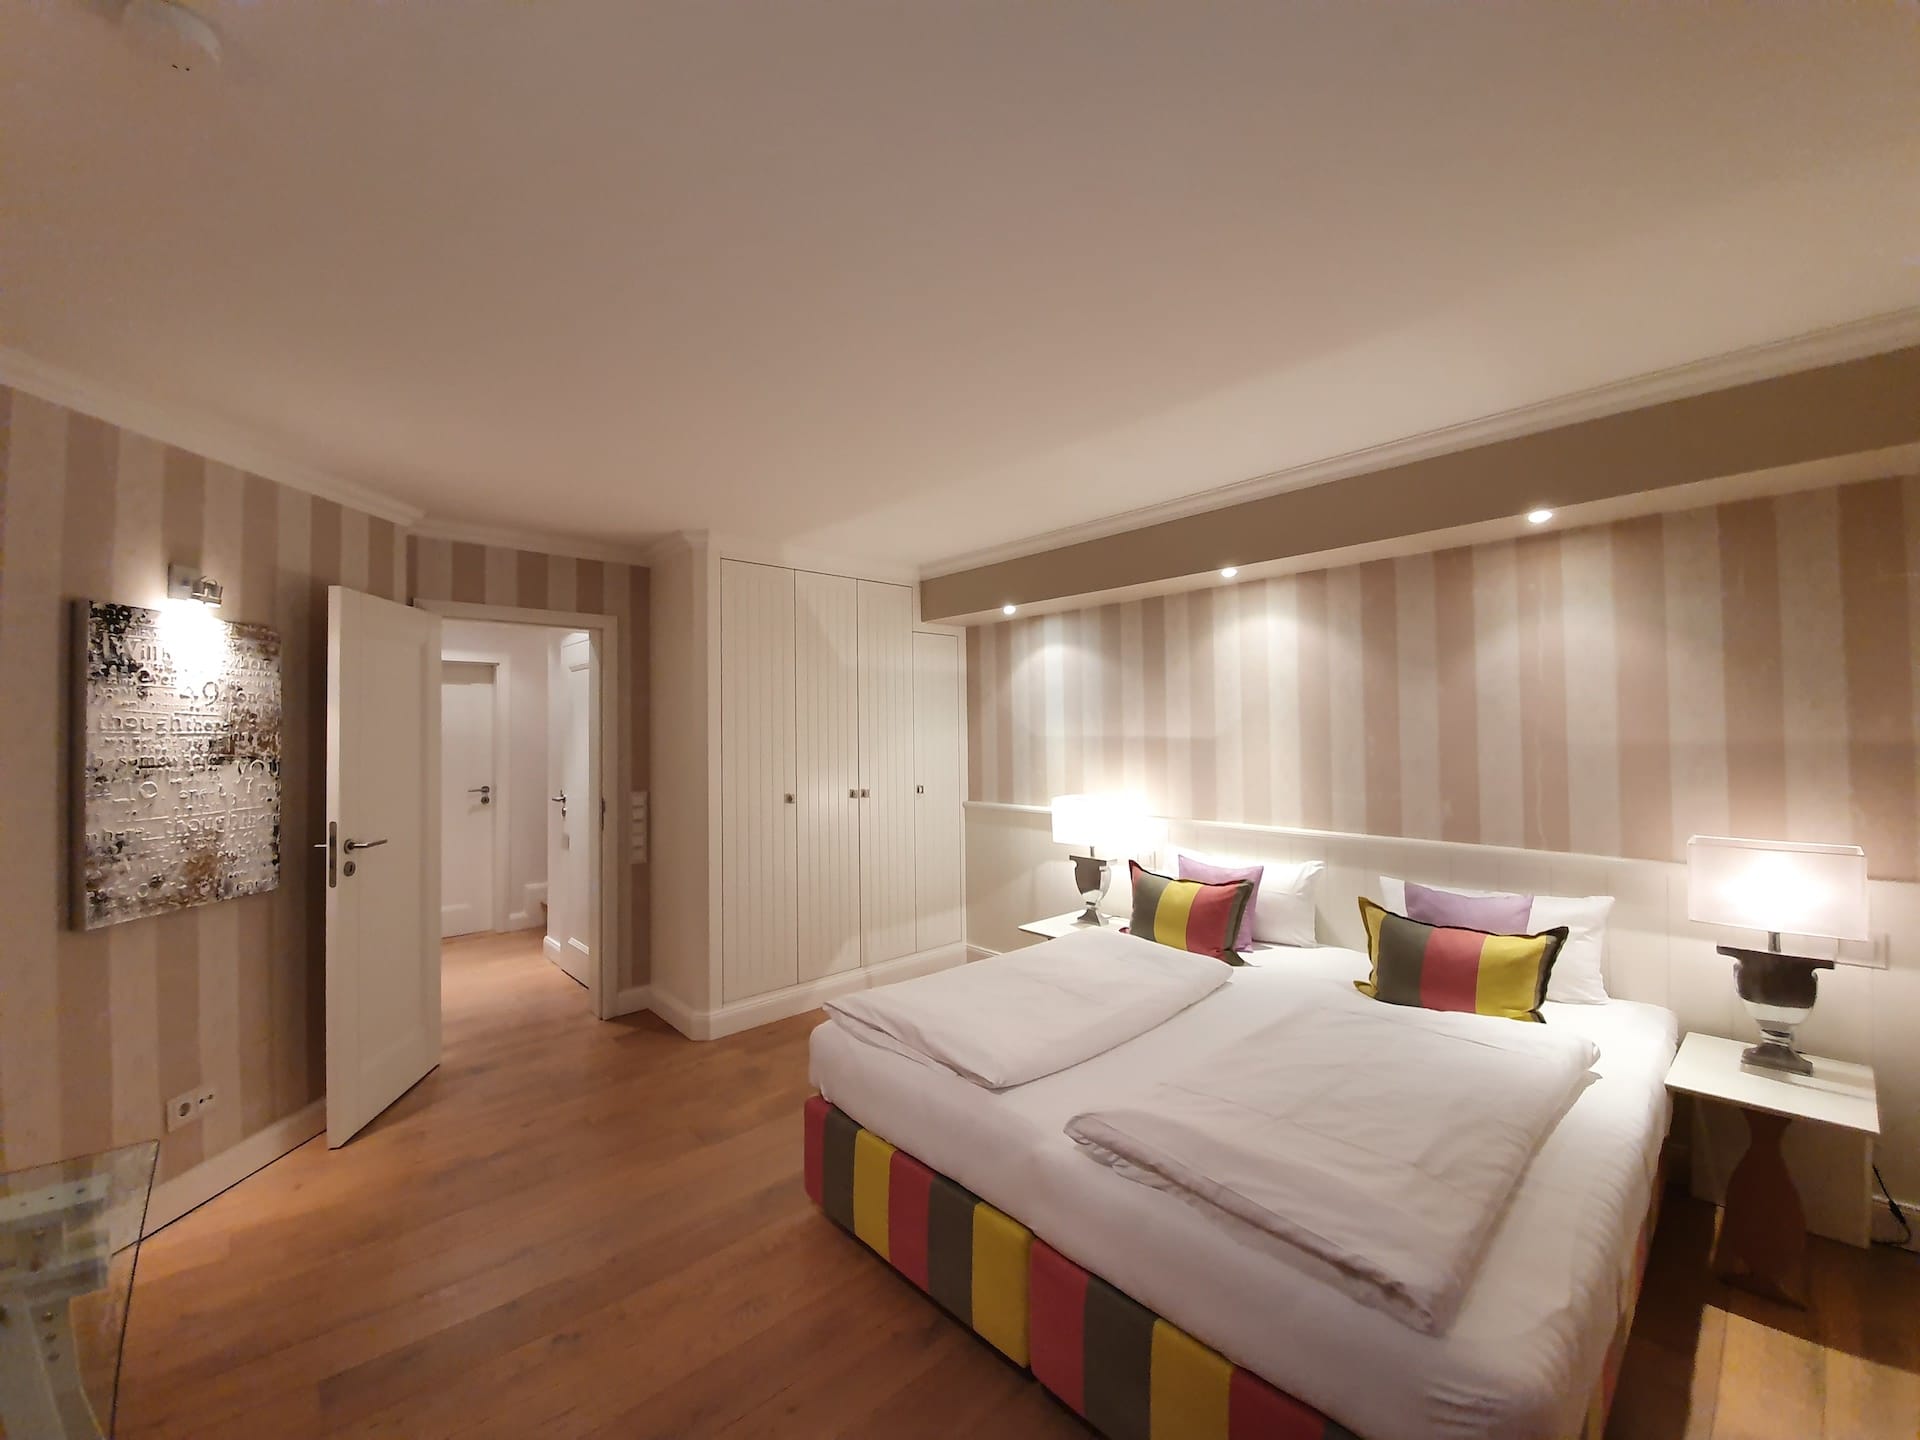 Drittes Schlafzimmer mit Doppelbett im Ferienhaus für 6 Personen "Waashüs" in Rantum auf Sylt, vom Hotel Duene